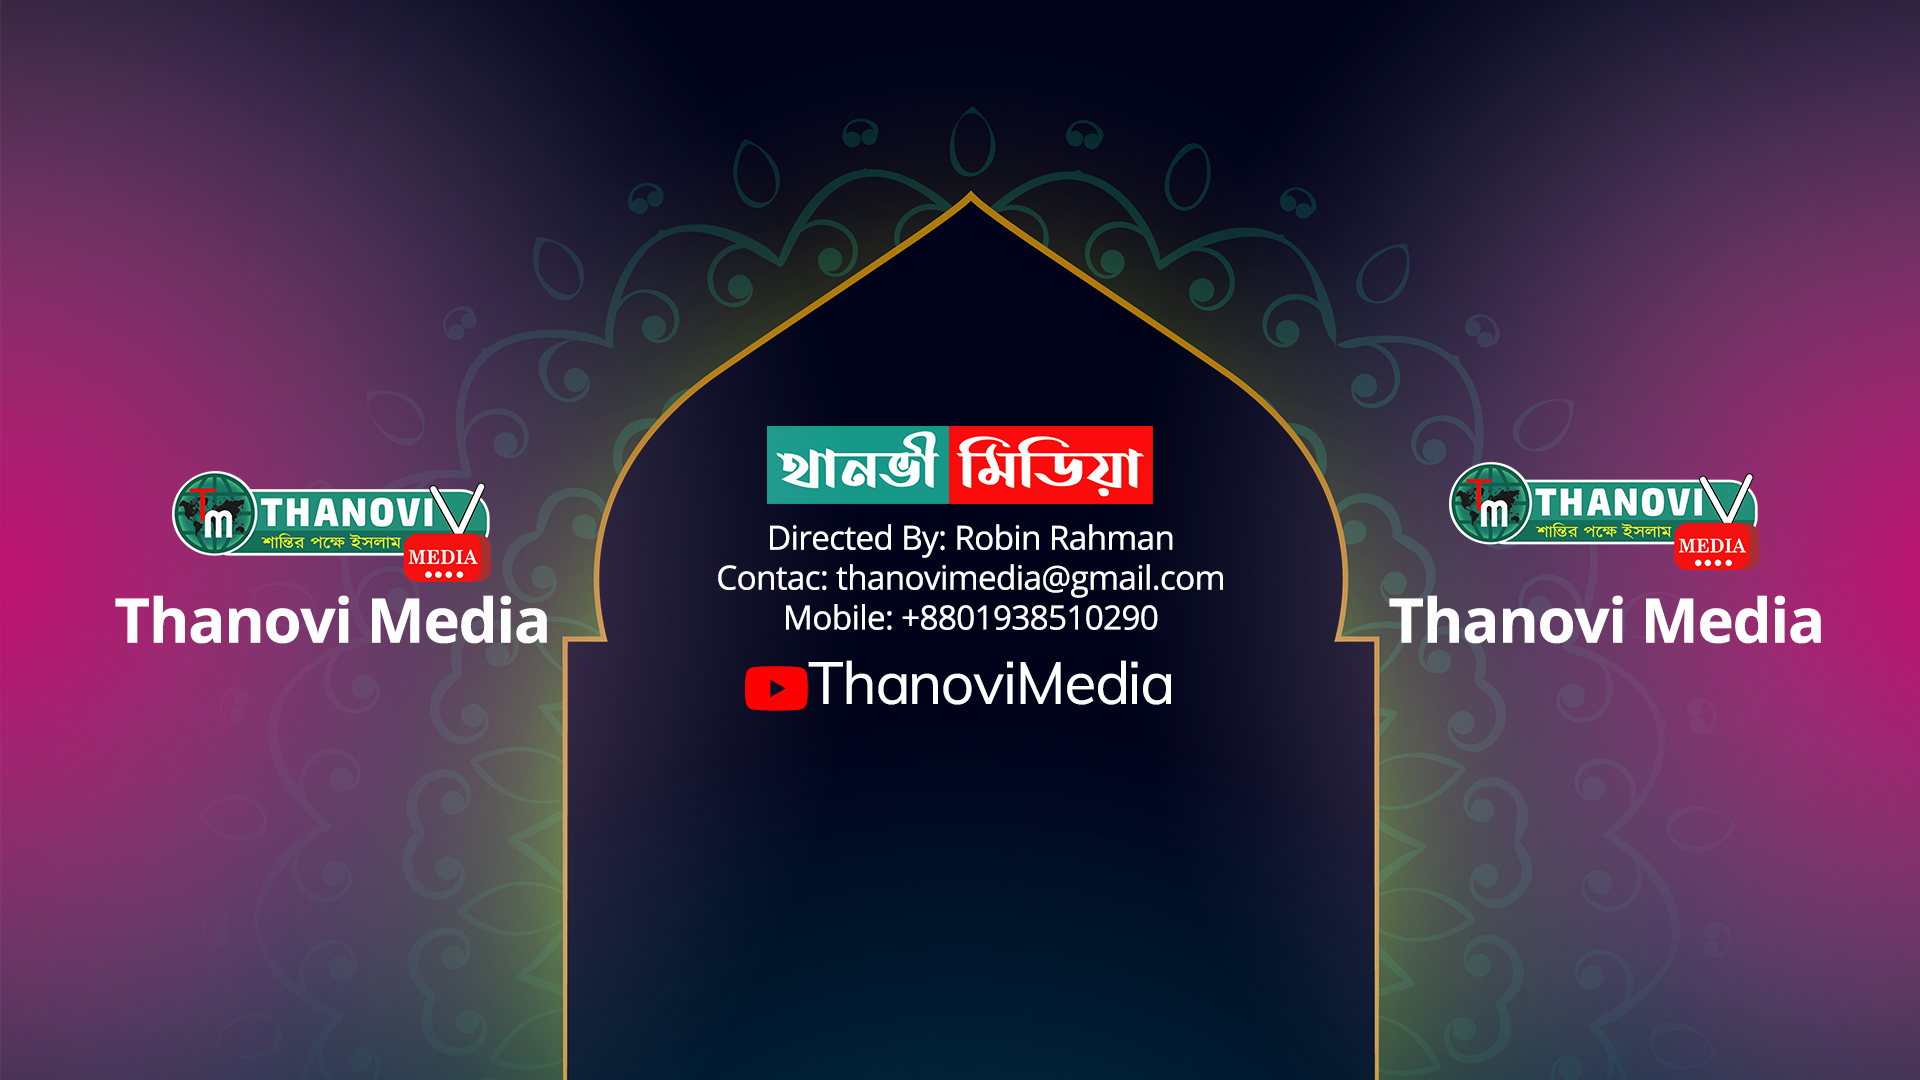 Thanovi Media